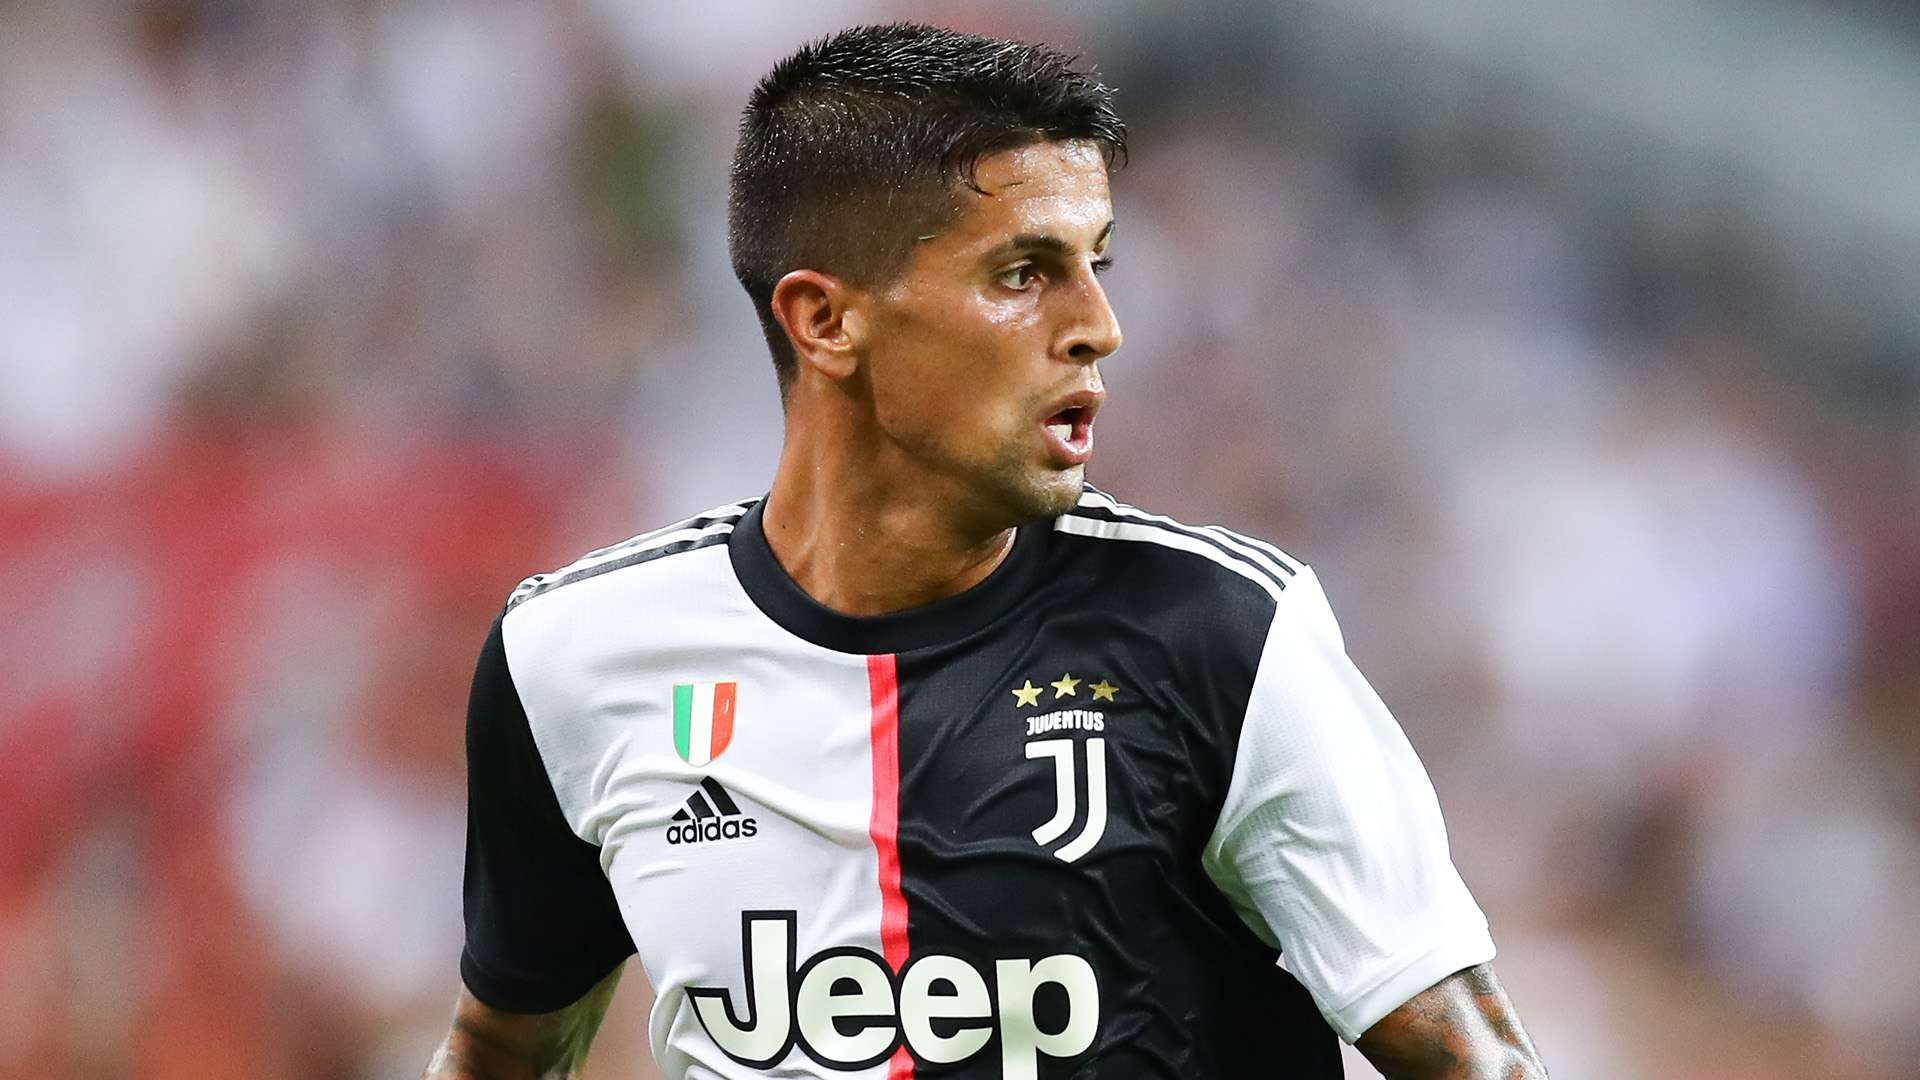 Joao Cancelo Juventus 2019-20